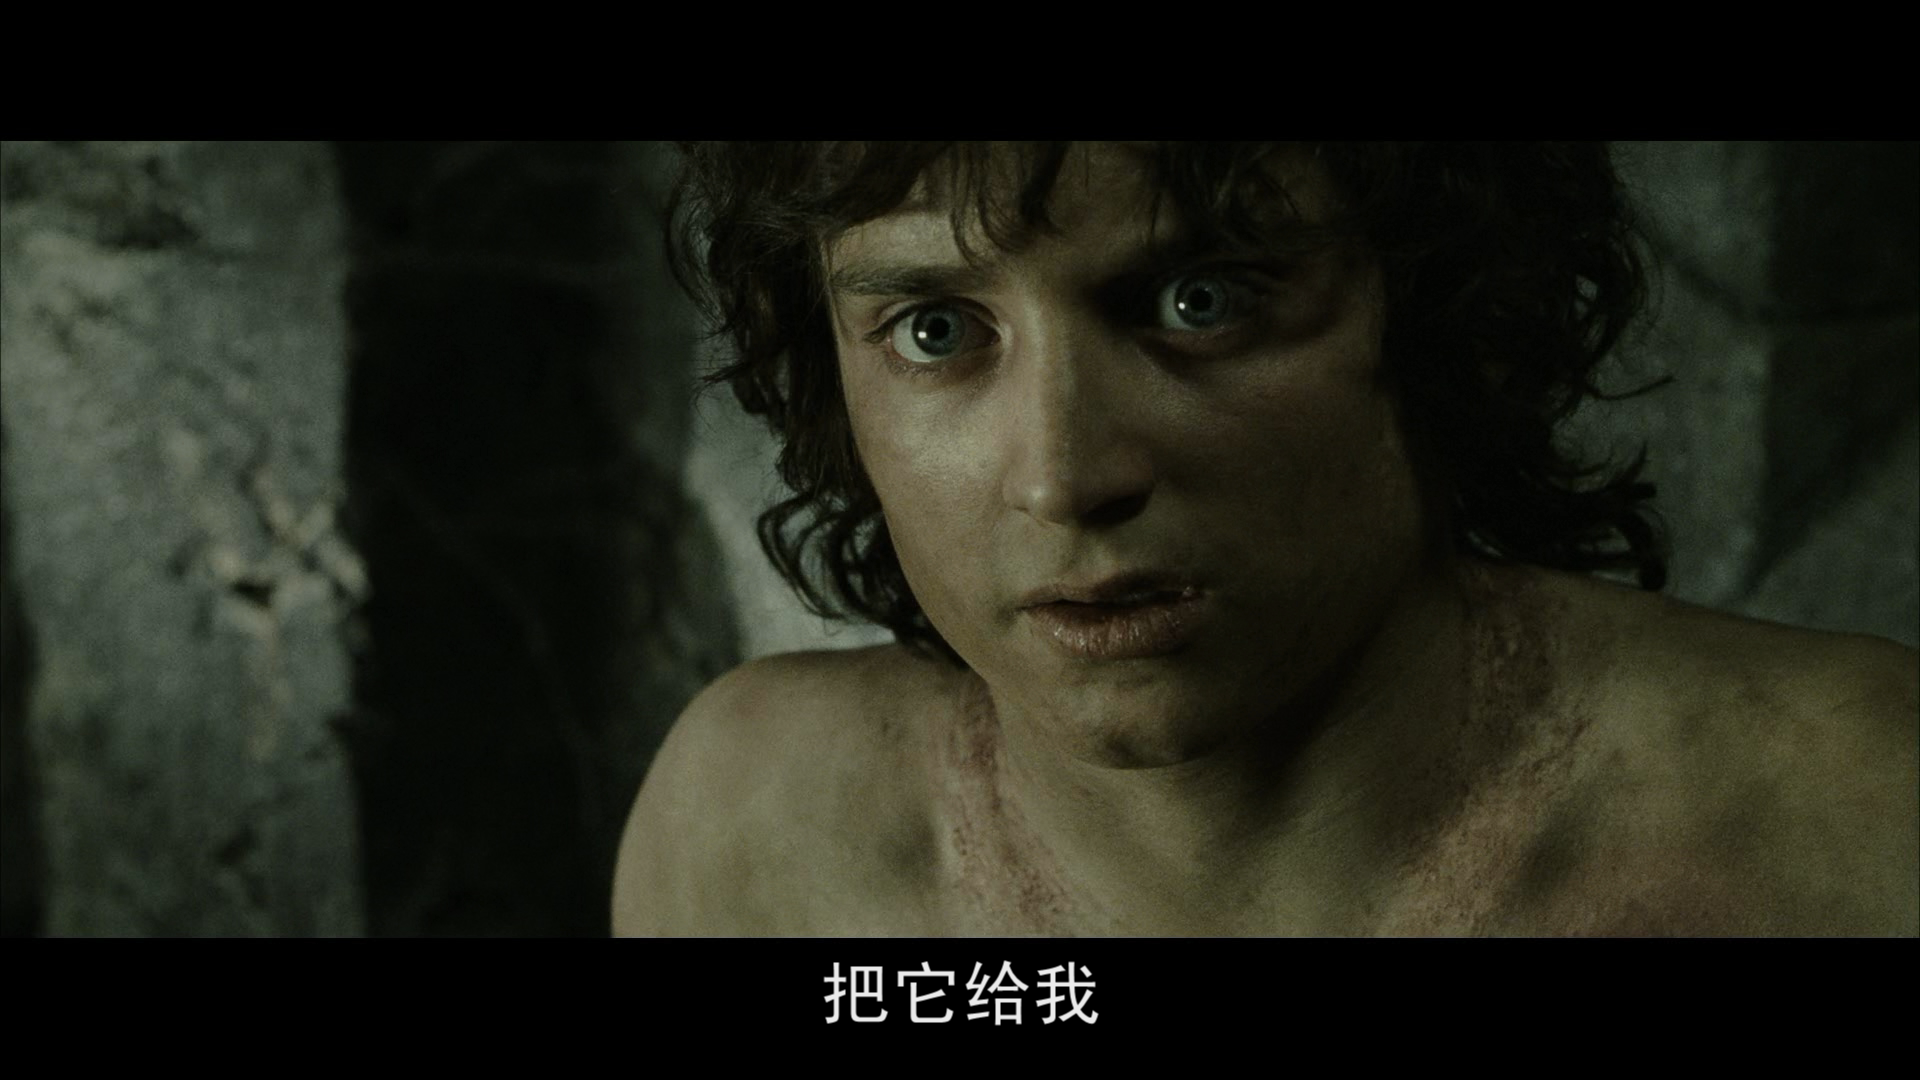 [霍比特人2].The.Hobbit.The.Desolation.of.Smaug.2013.EXTENDED.BluRay.1080p.AVC.DTS-HD.MA.7.1-Tay   41.01G- u2 n) A4 b( T-15.png